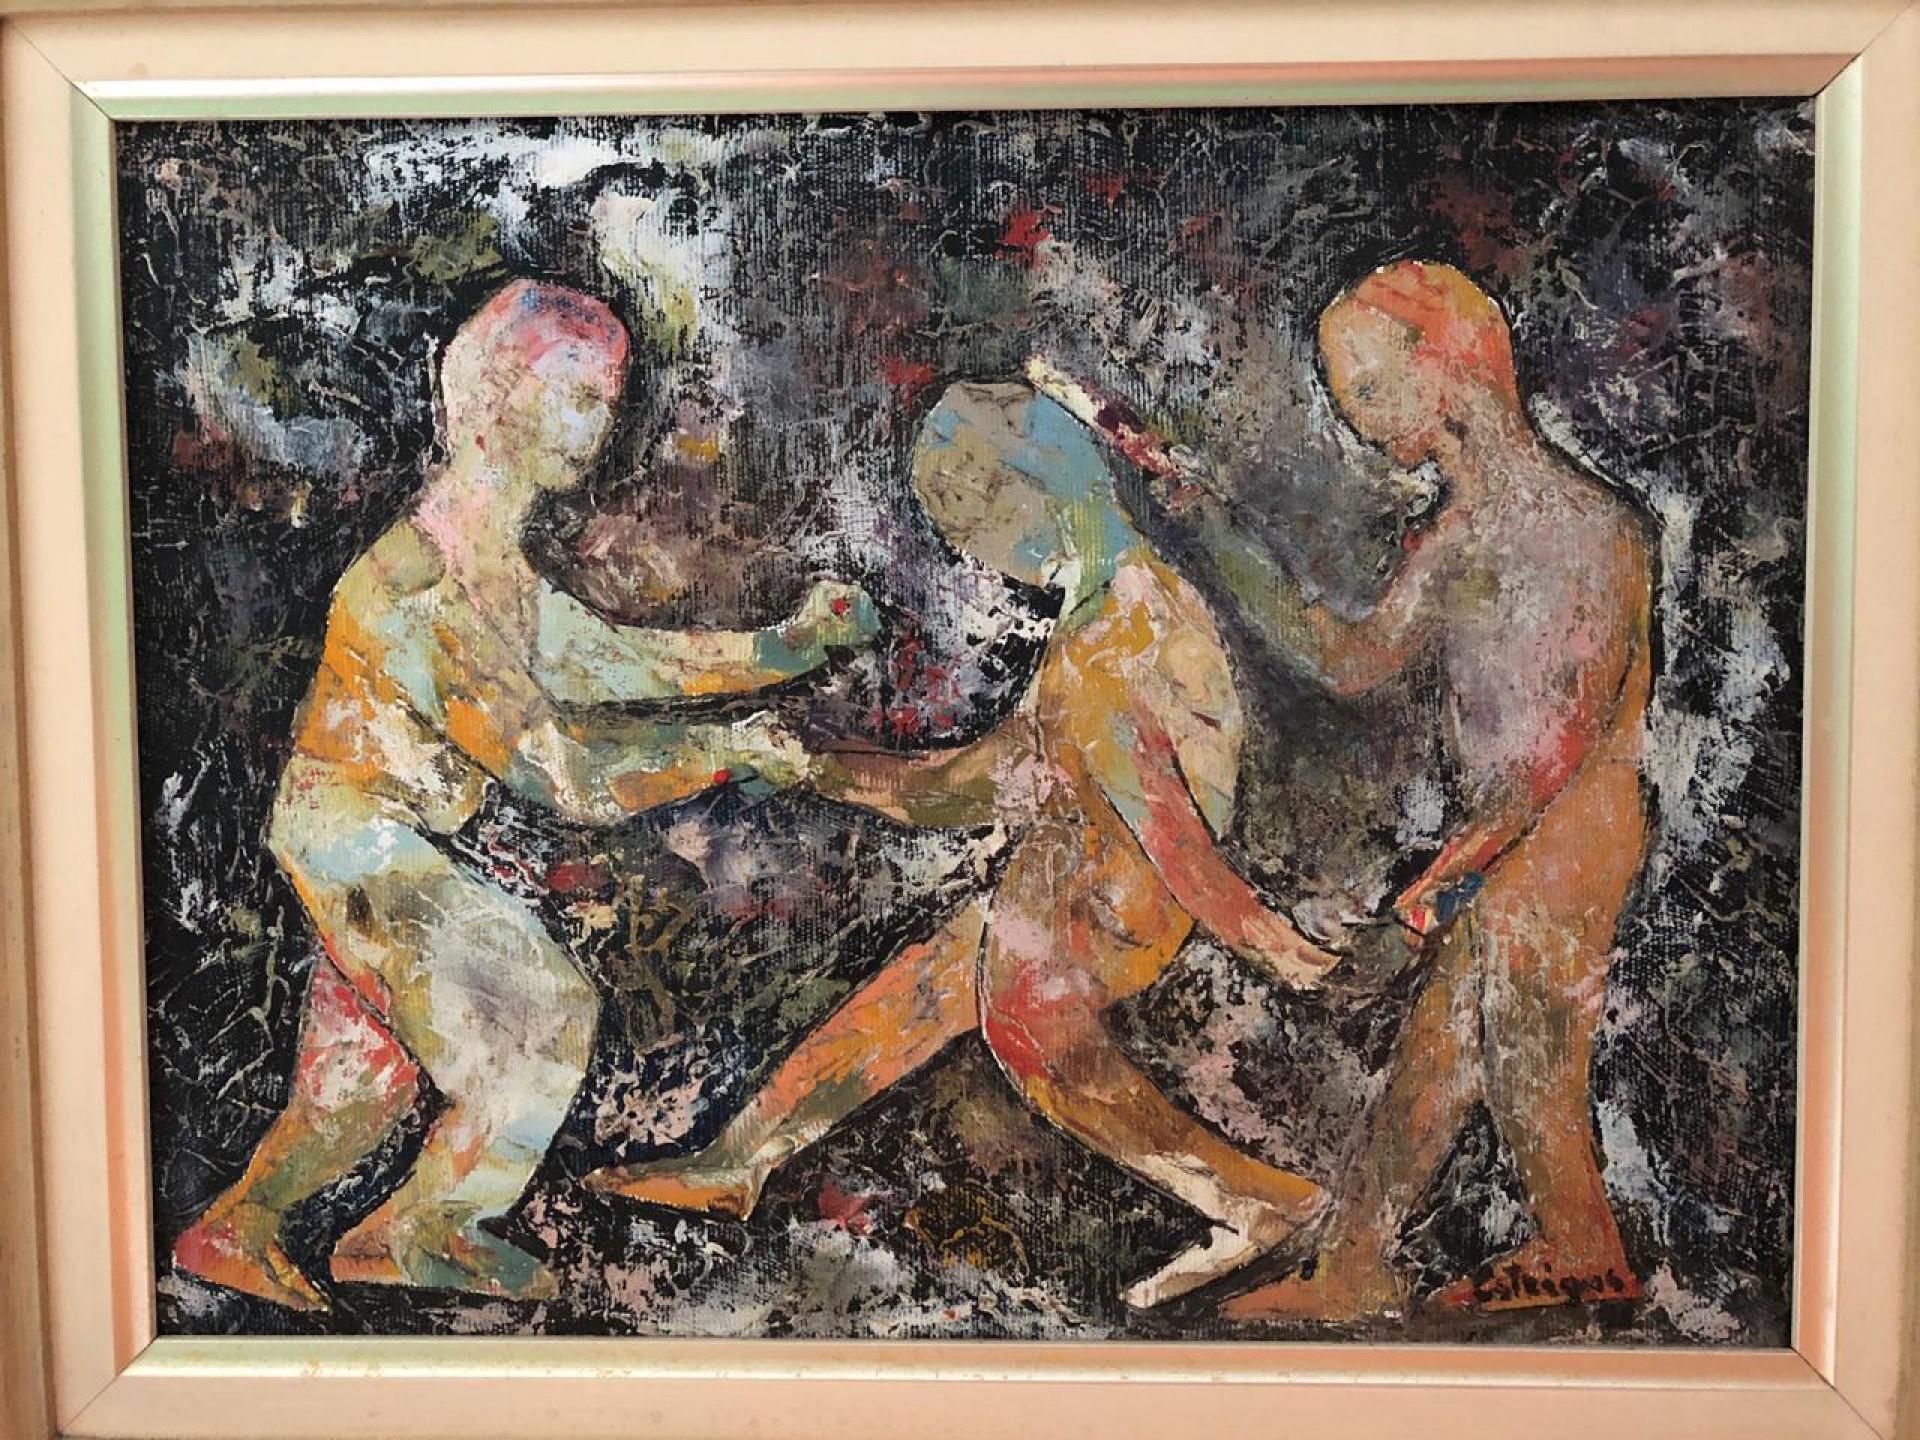 Pintura em óleo sobre tela de Estrigas produzida em 1998 retrata cena de violência (Foto: acervo pessoal/ Flávio Paiva)